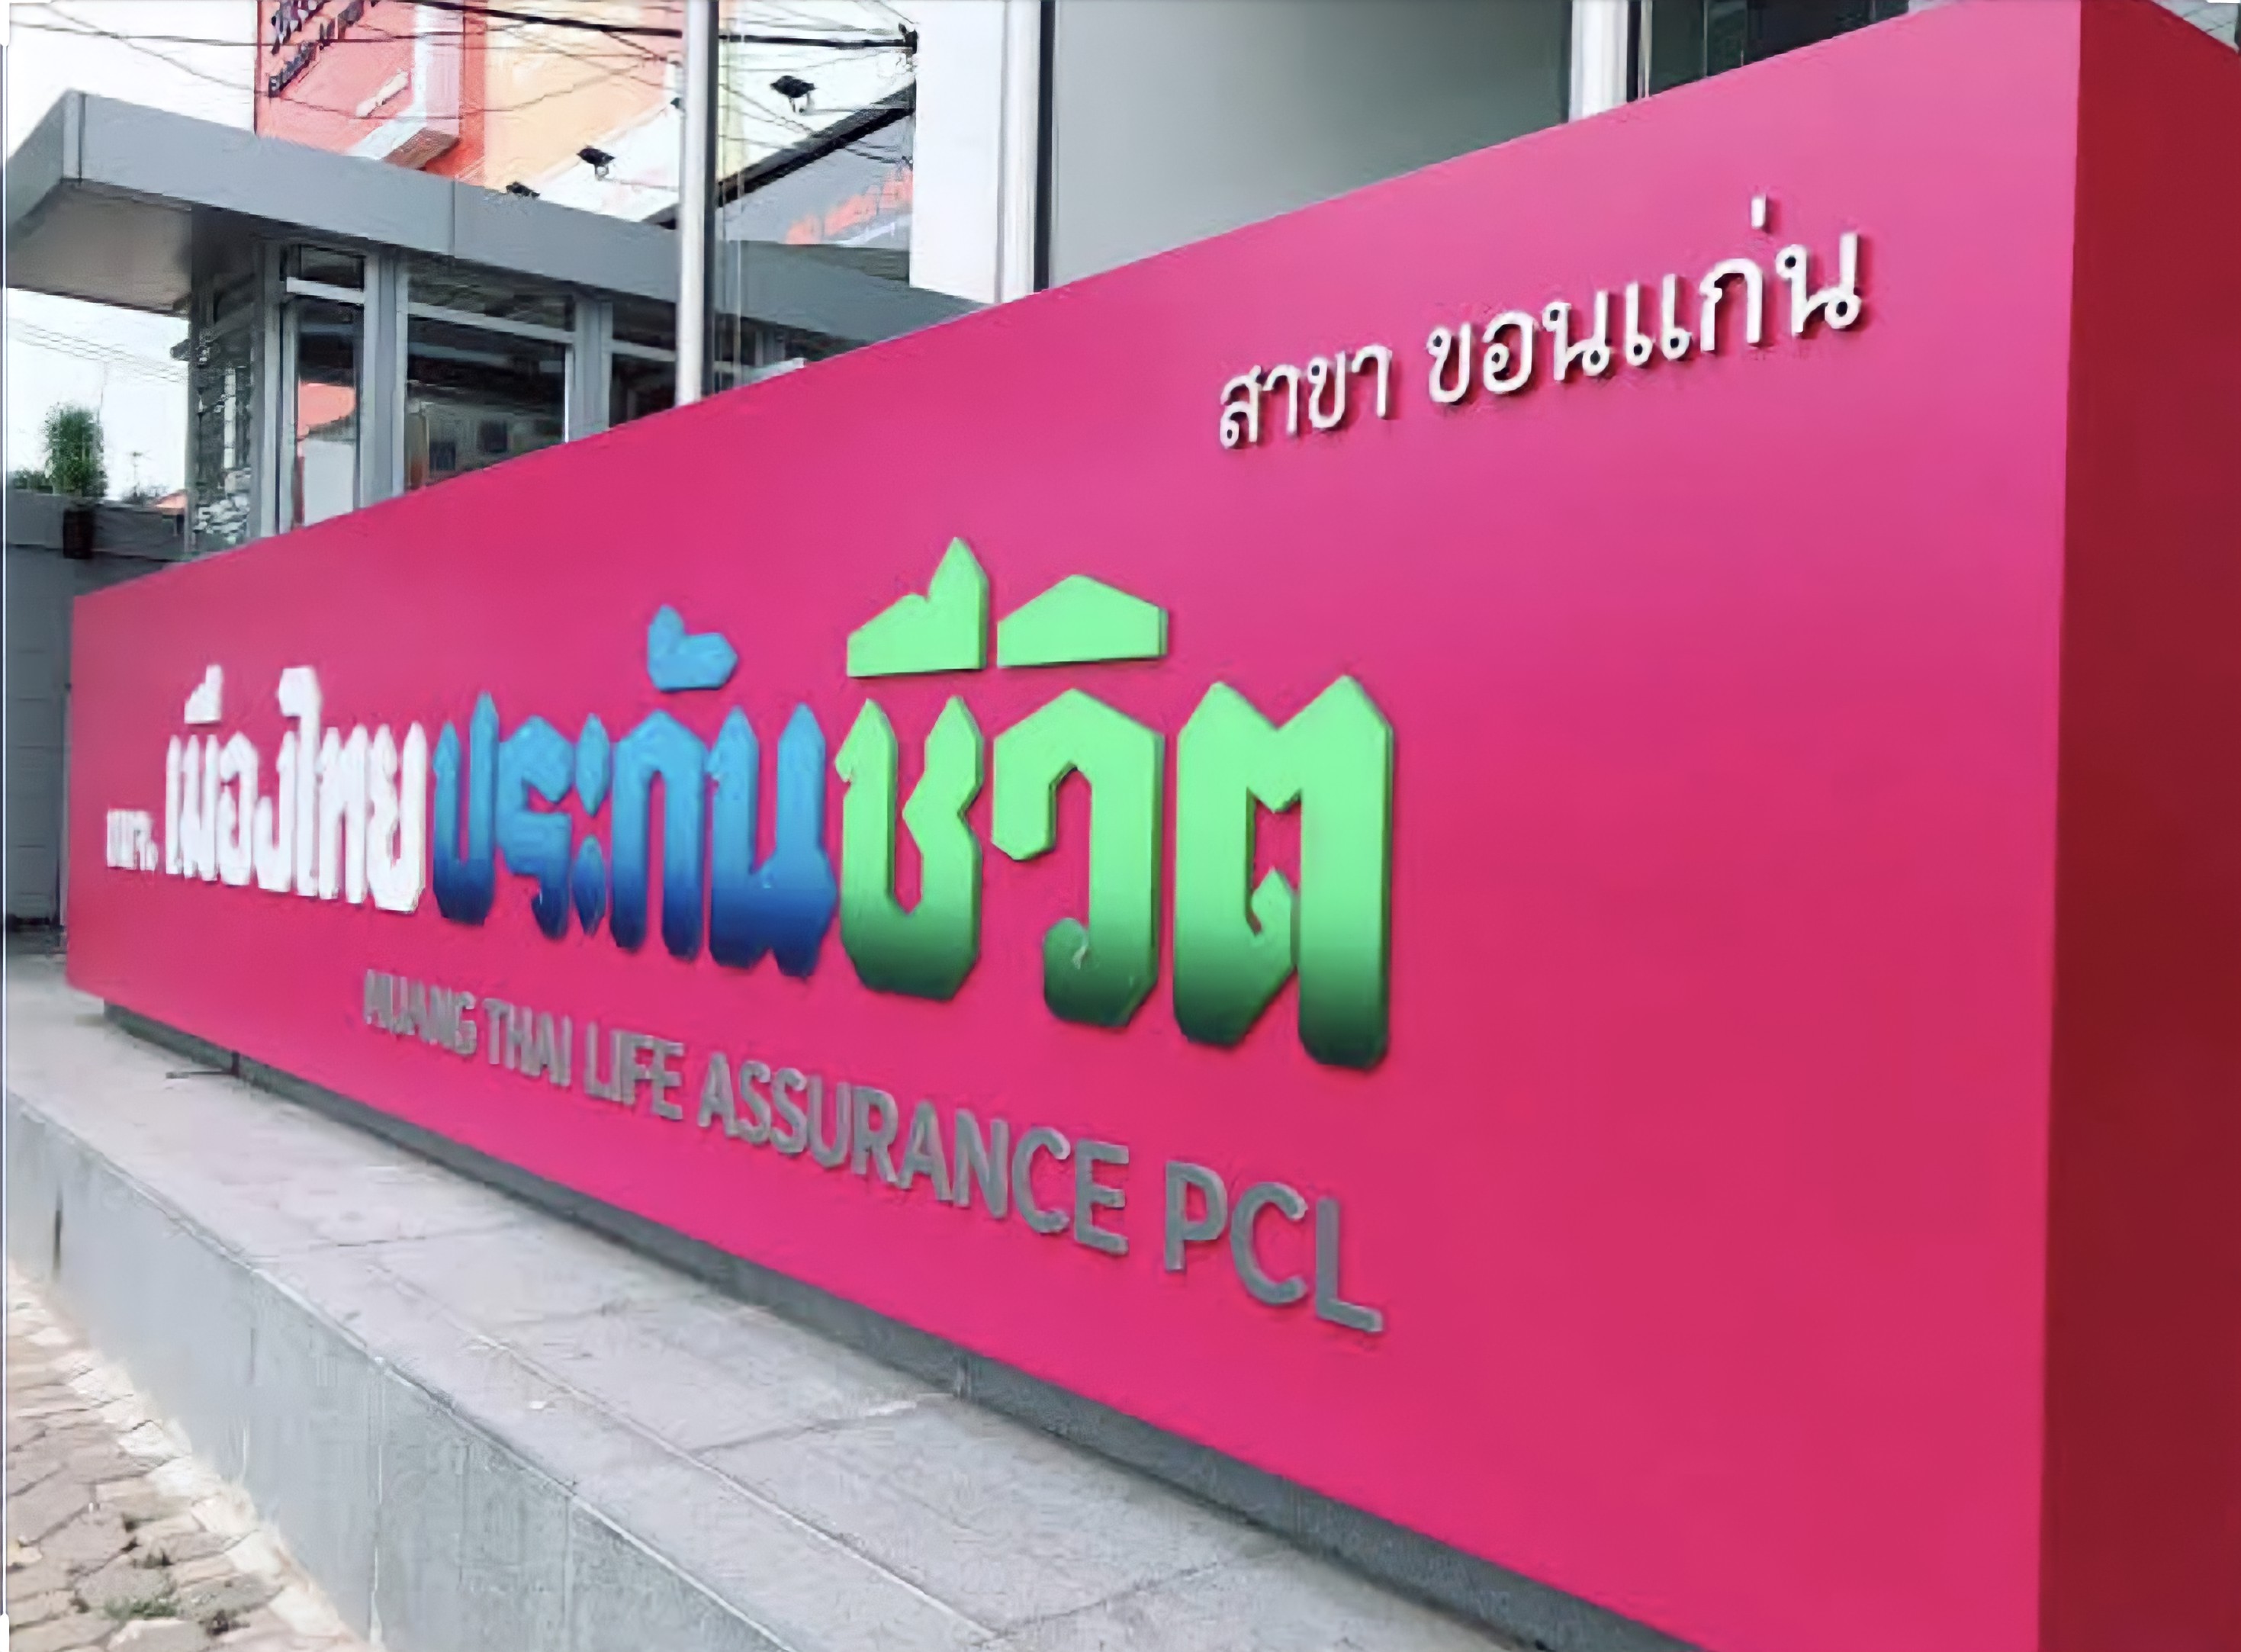 บมจ. เมืองไทยประกันชีวิต (สาขาขอนแก่น) logo โลโก้